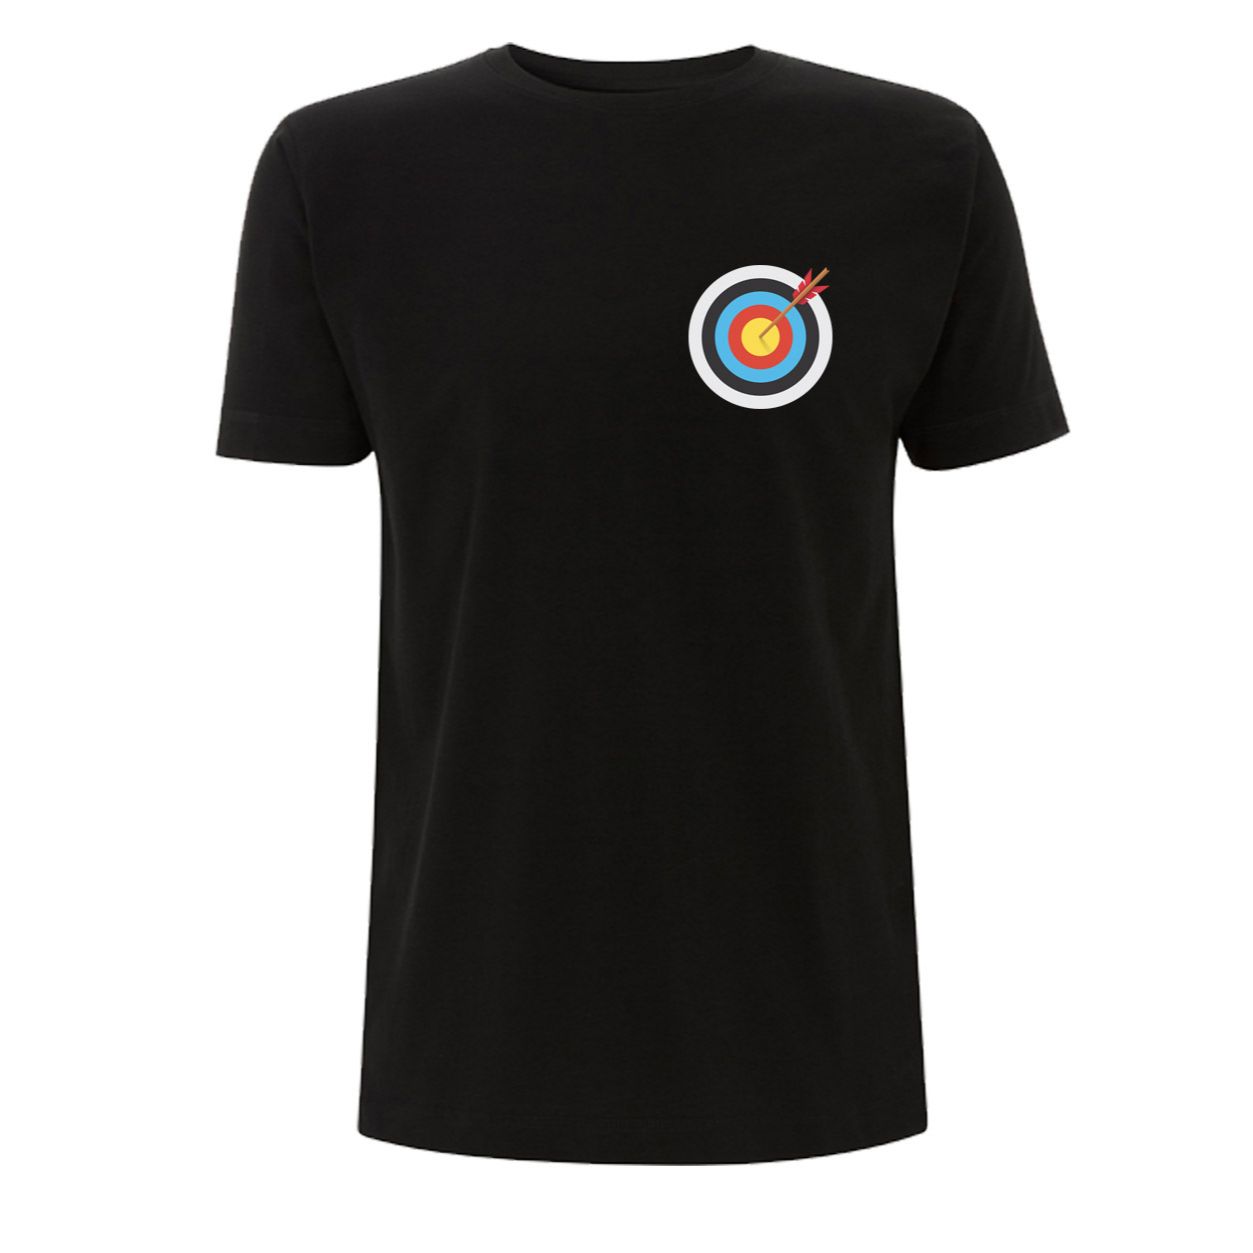 Archery Target T-Shirt